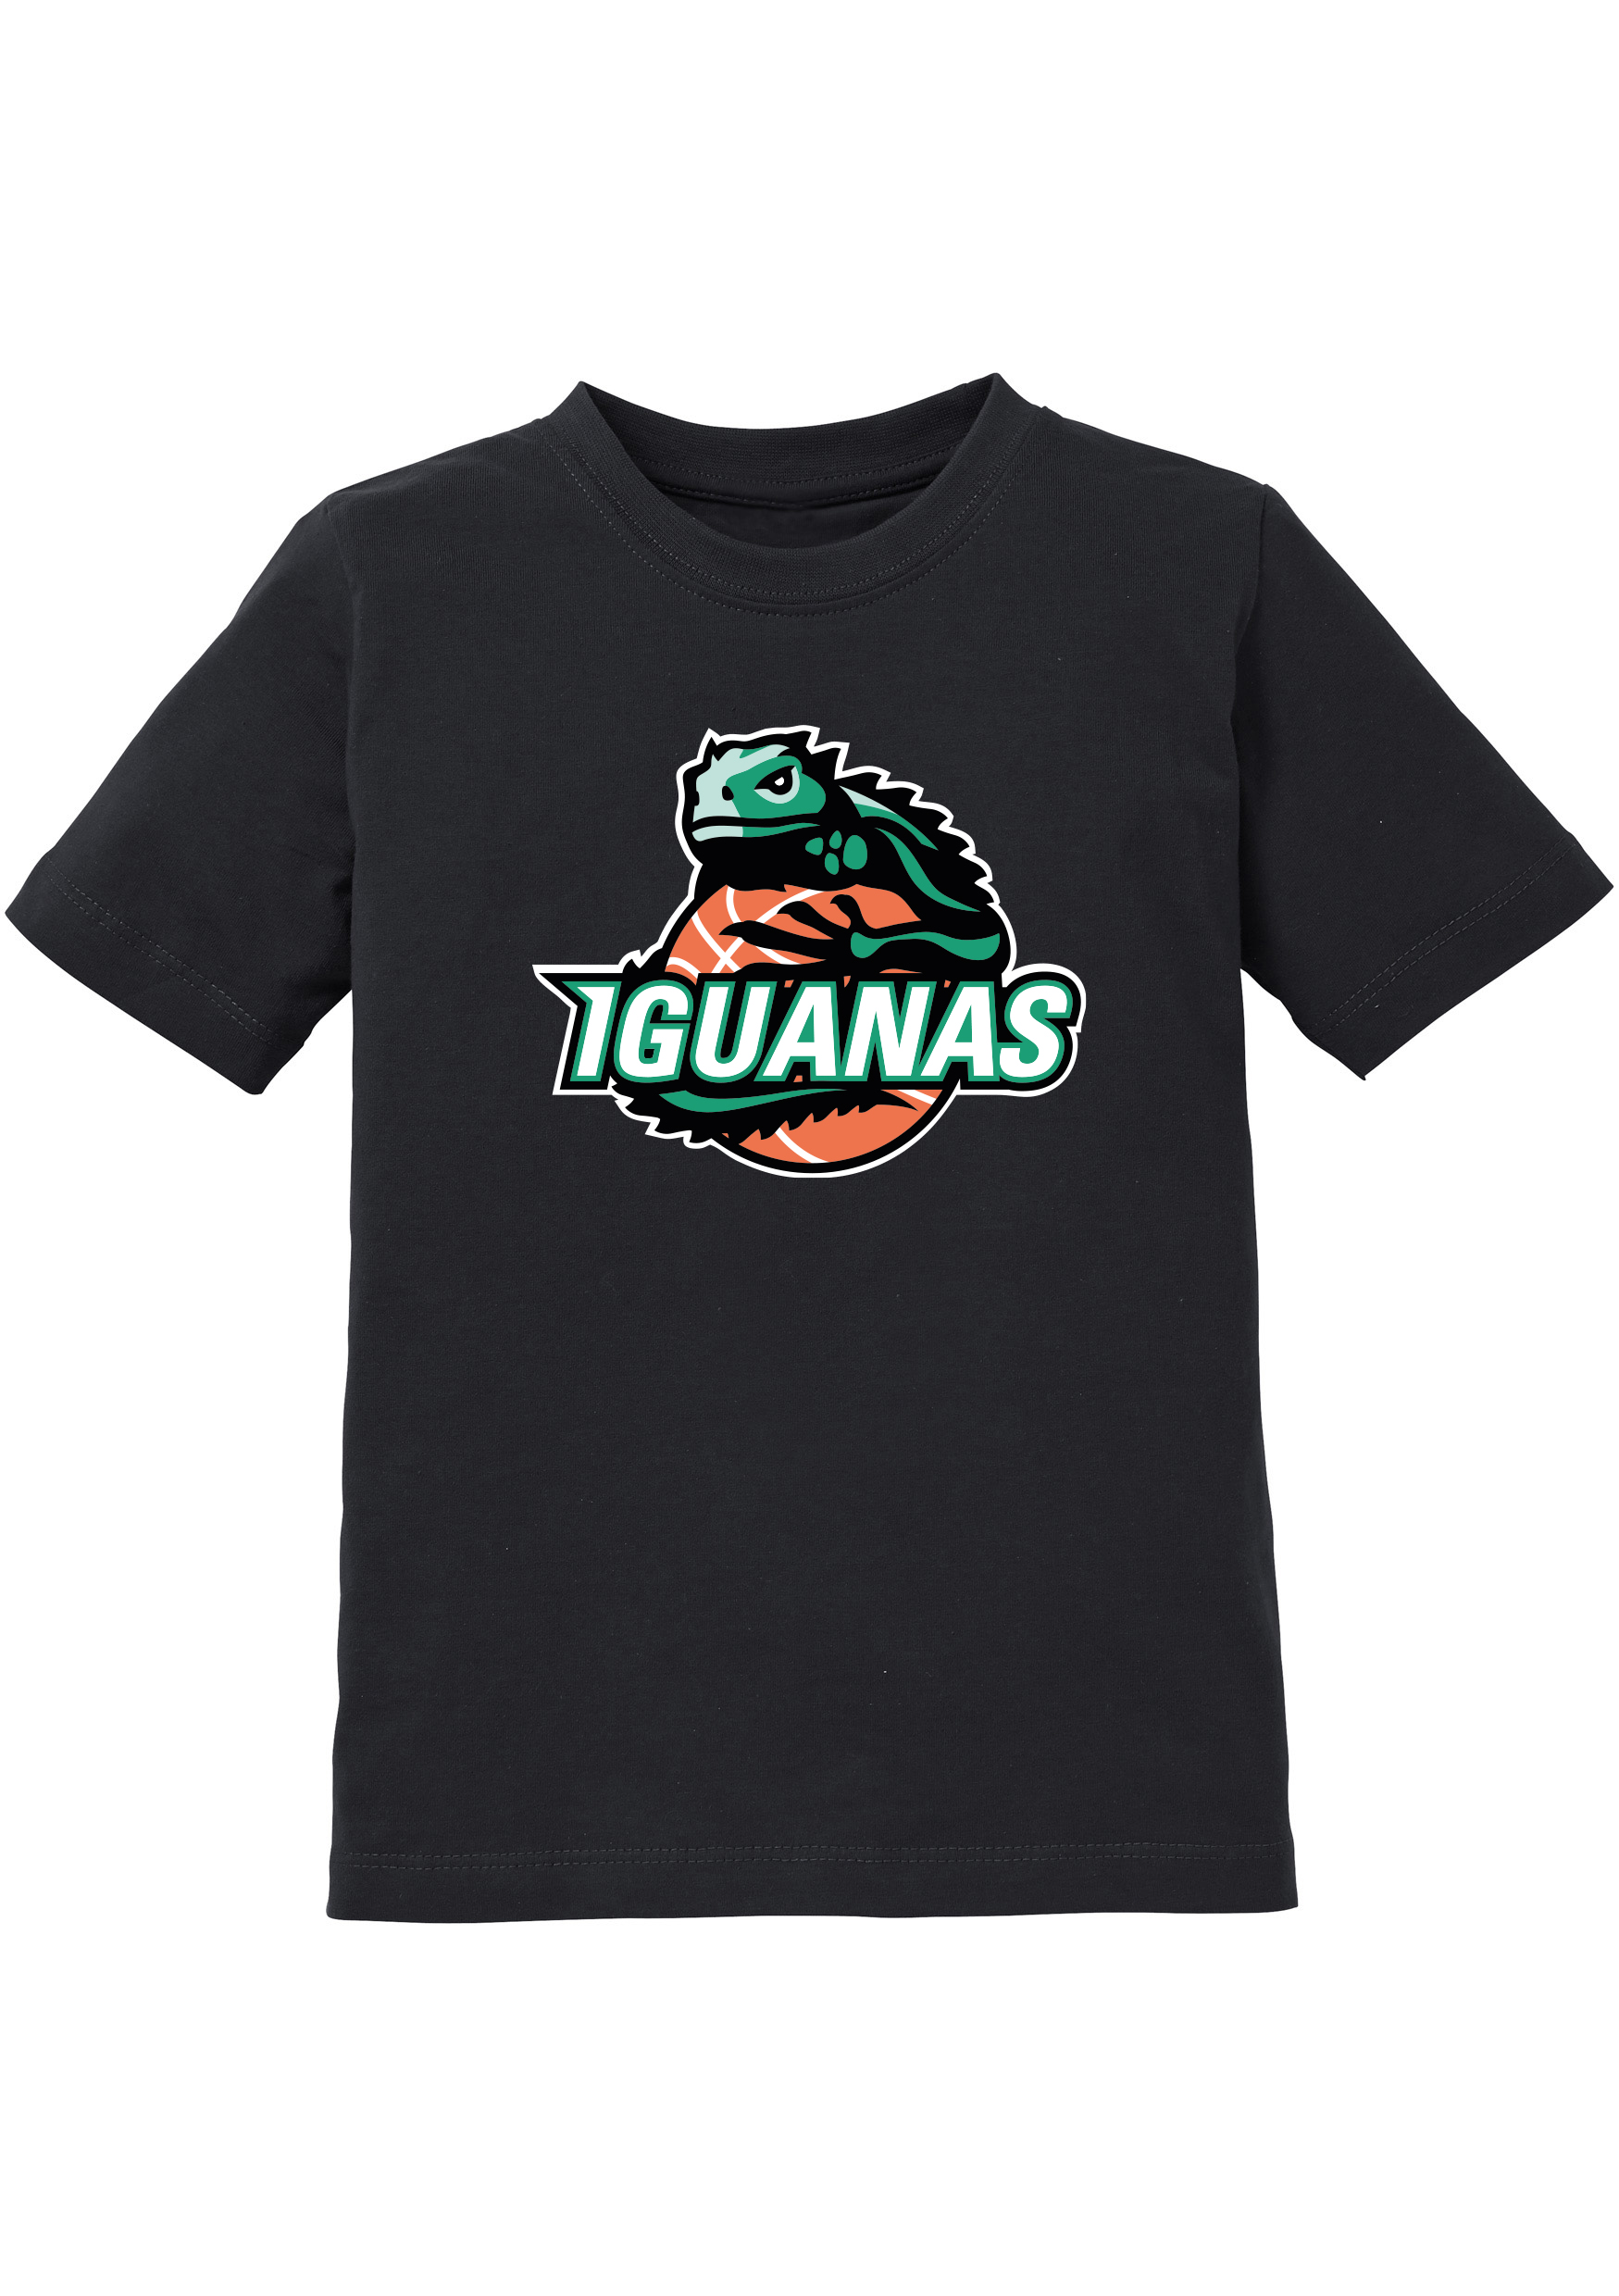 Iguanas T-Shirt Kids